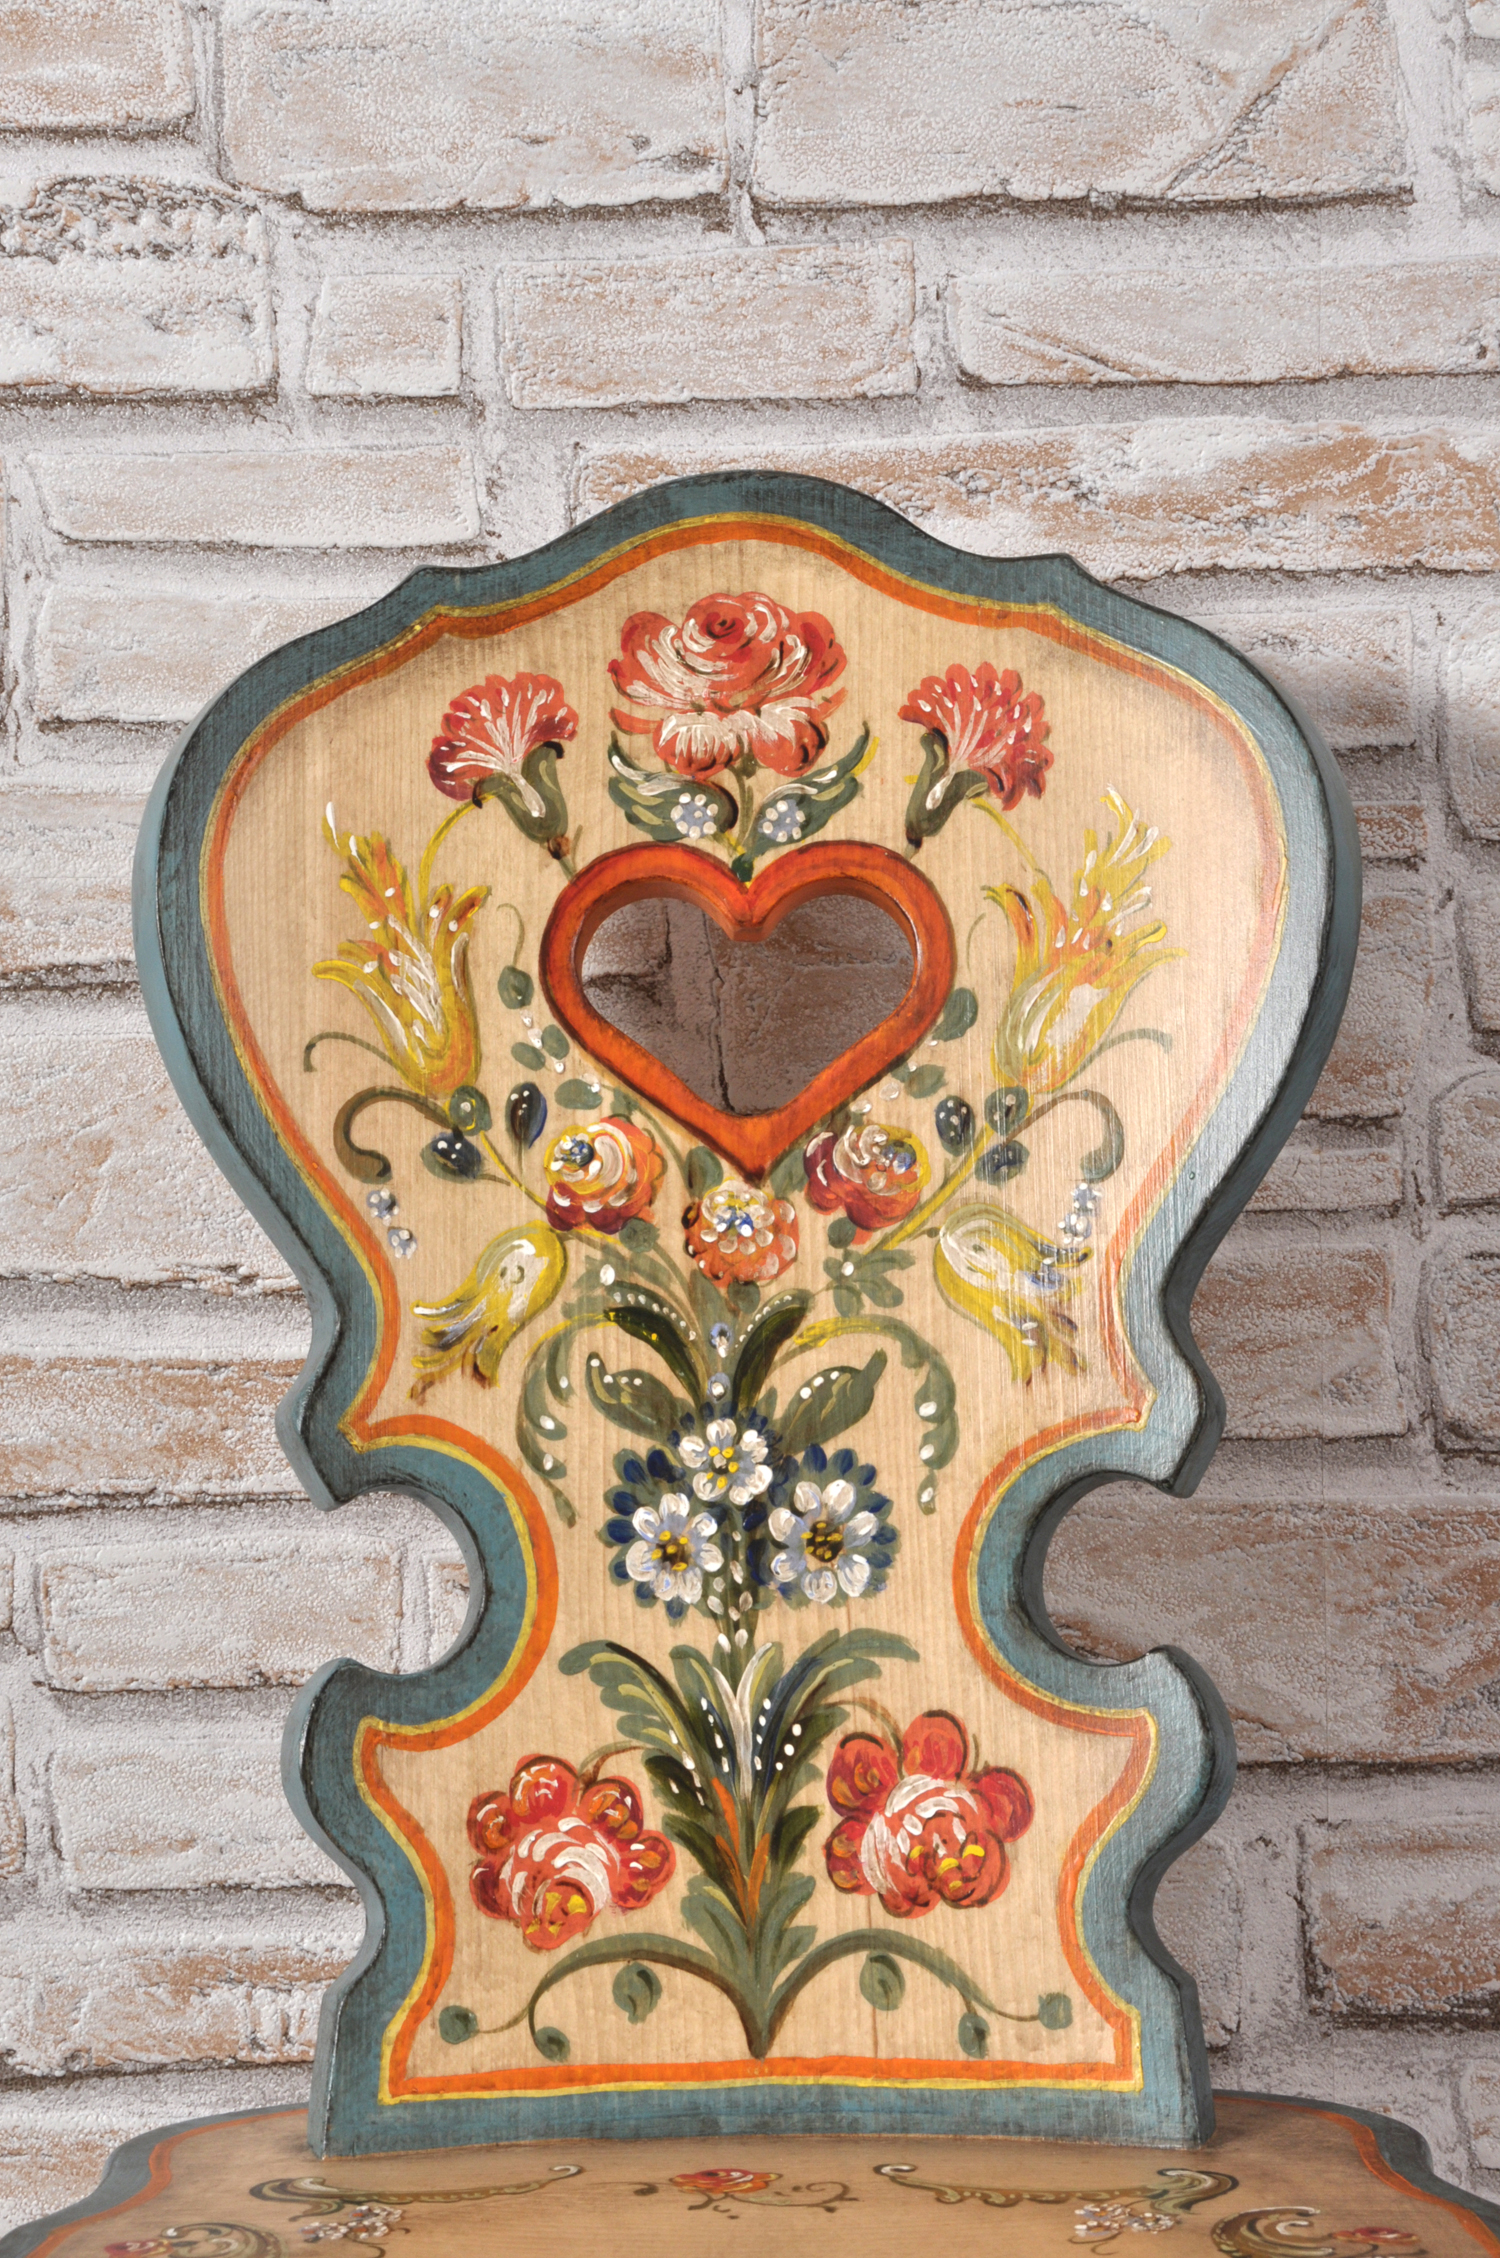 sagomatura dello schienale ricca di decorazioni con mazzi di fiori dai colori vivaci della sedia tirolese dipinta a mano nello stile classico trentino